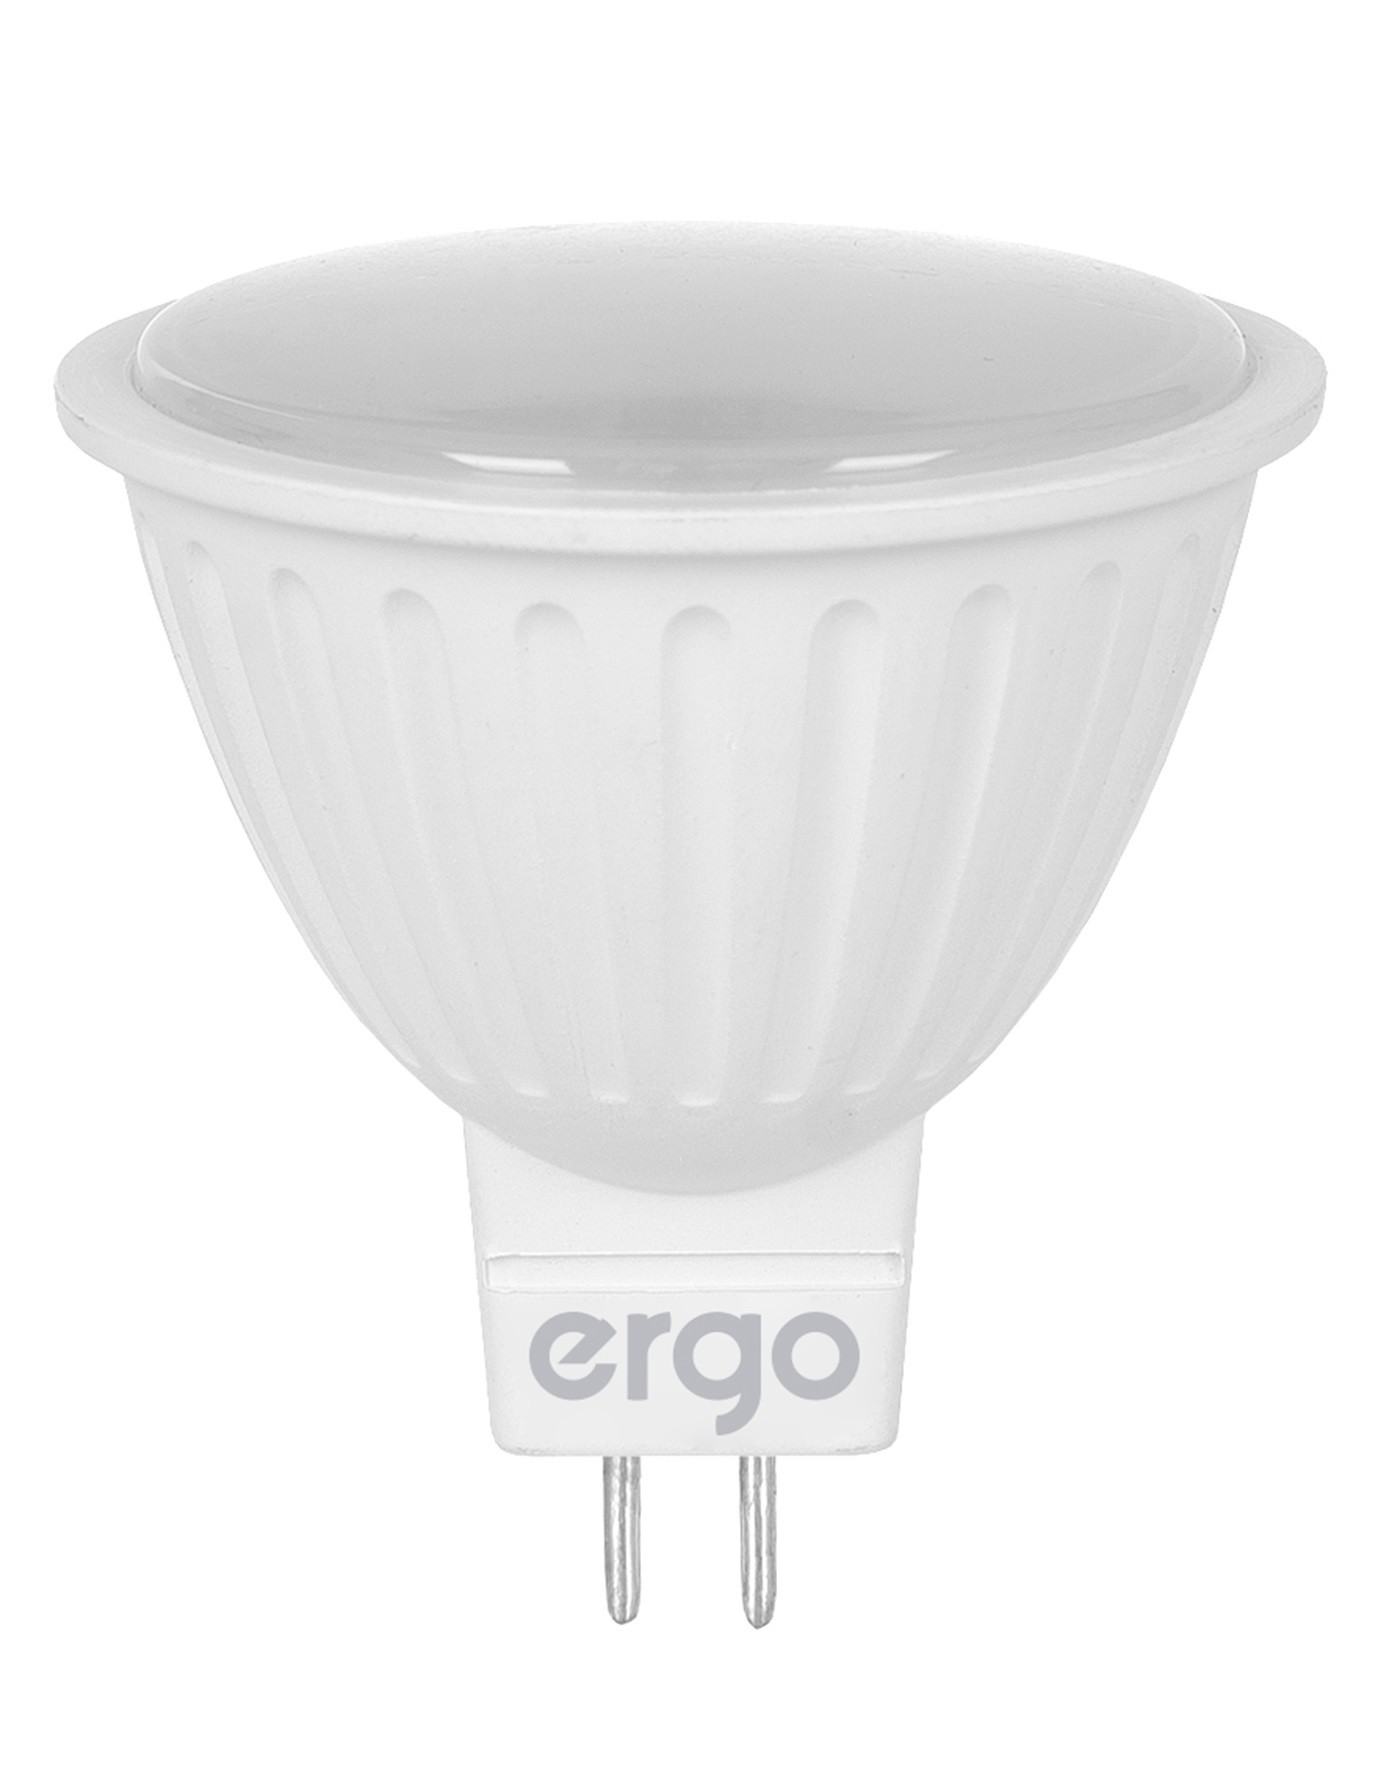 Цена лампа ergo светодиодная Ergo Basic MR16 в Киеве